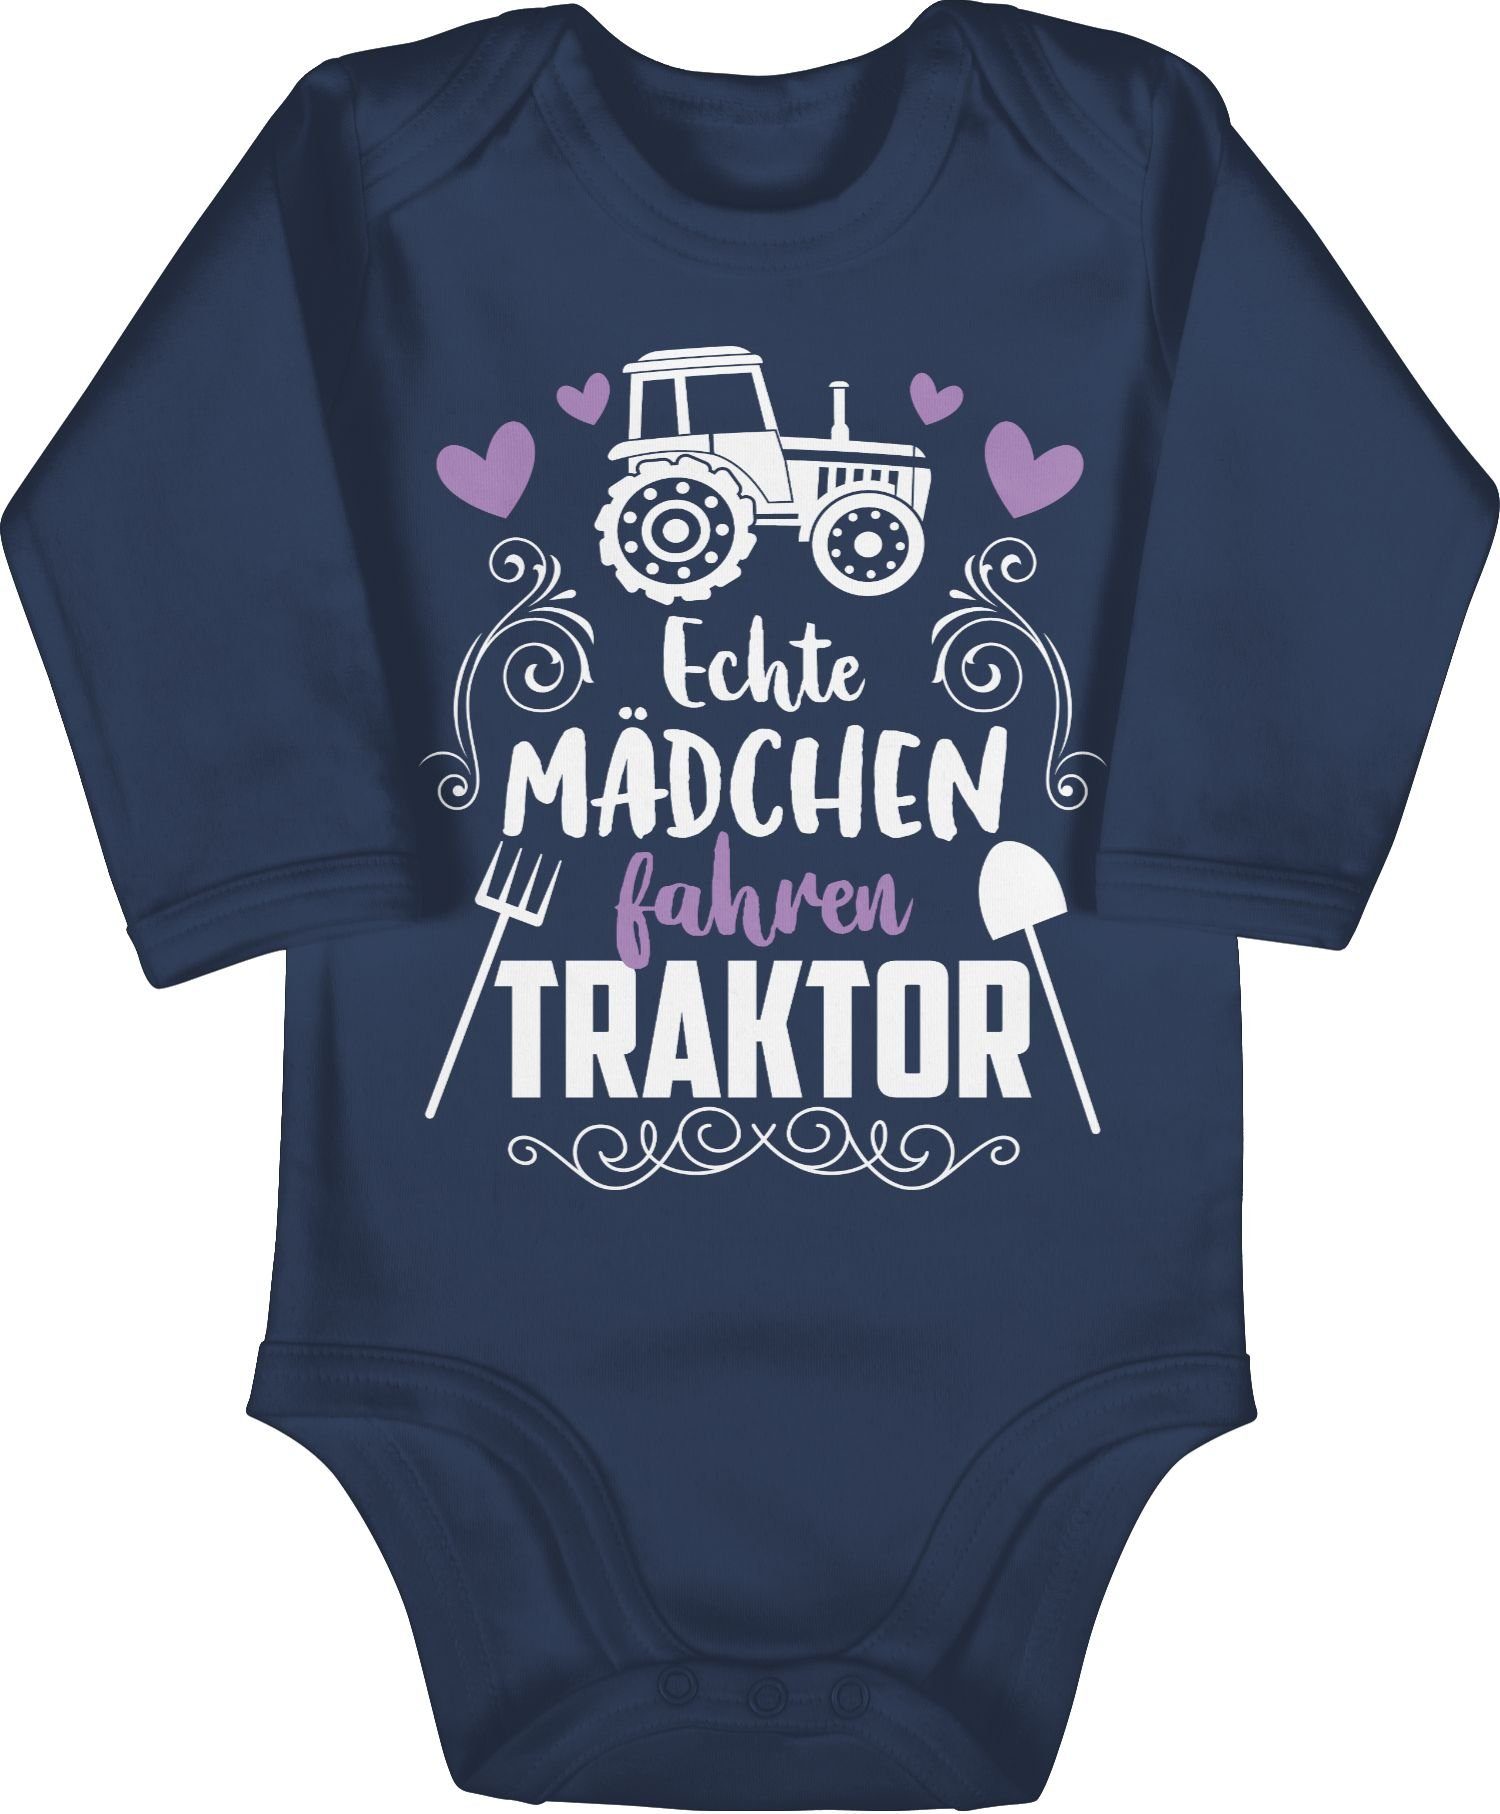 Traktor 1 weiß Blau Bagger - Mädchen Echte und fahren Traktor Shirtbody Co. Shirtracer Baby Navy